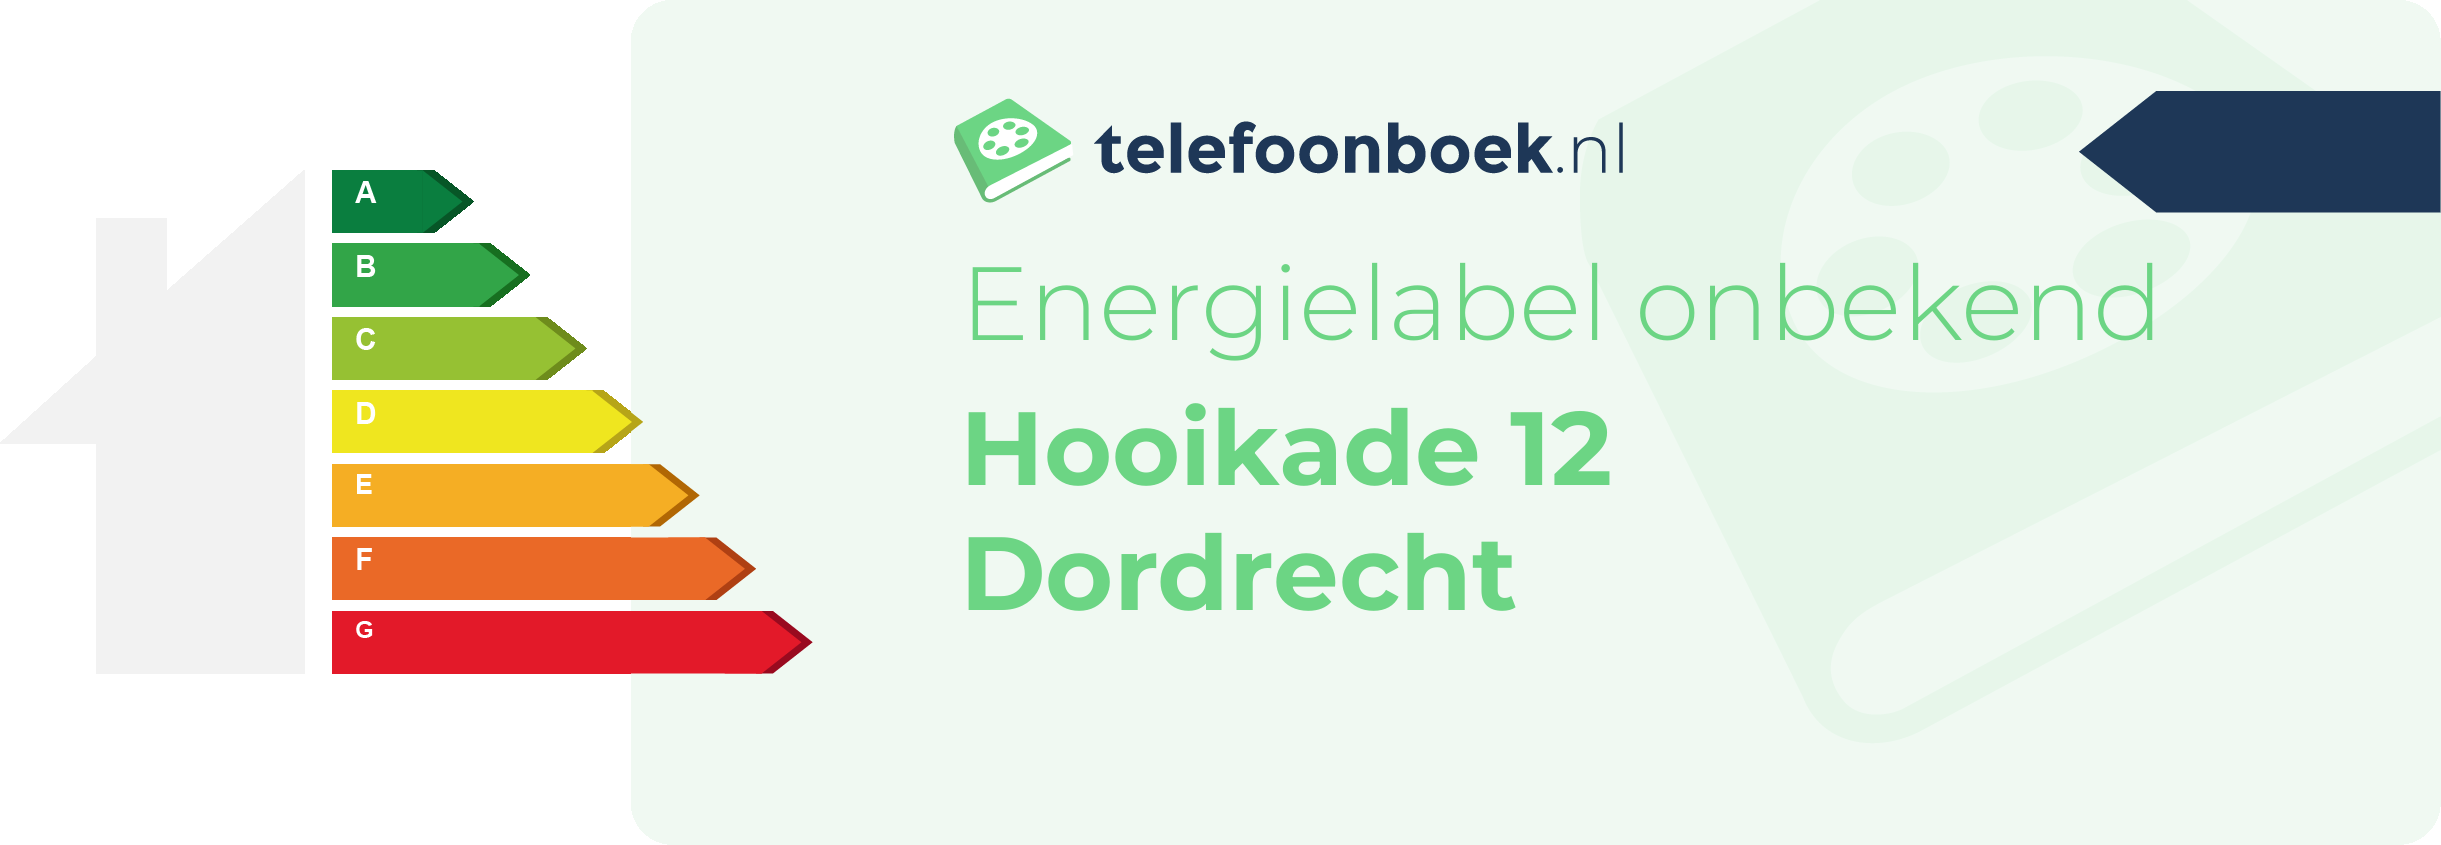 Energielabel Hooikade 12 Dordrecht